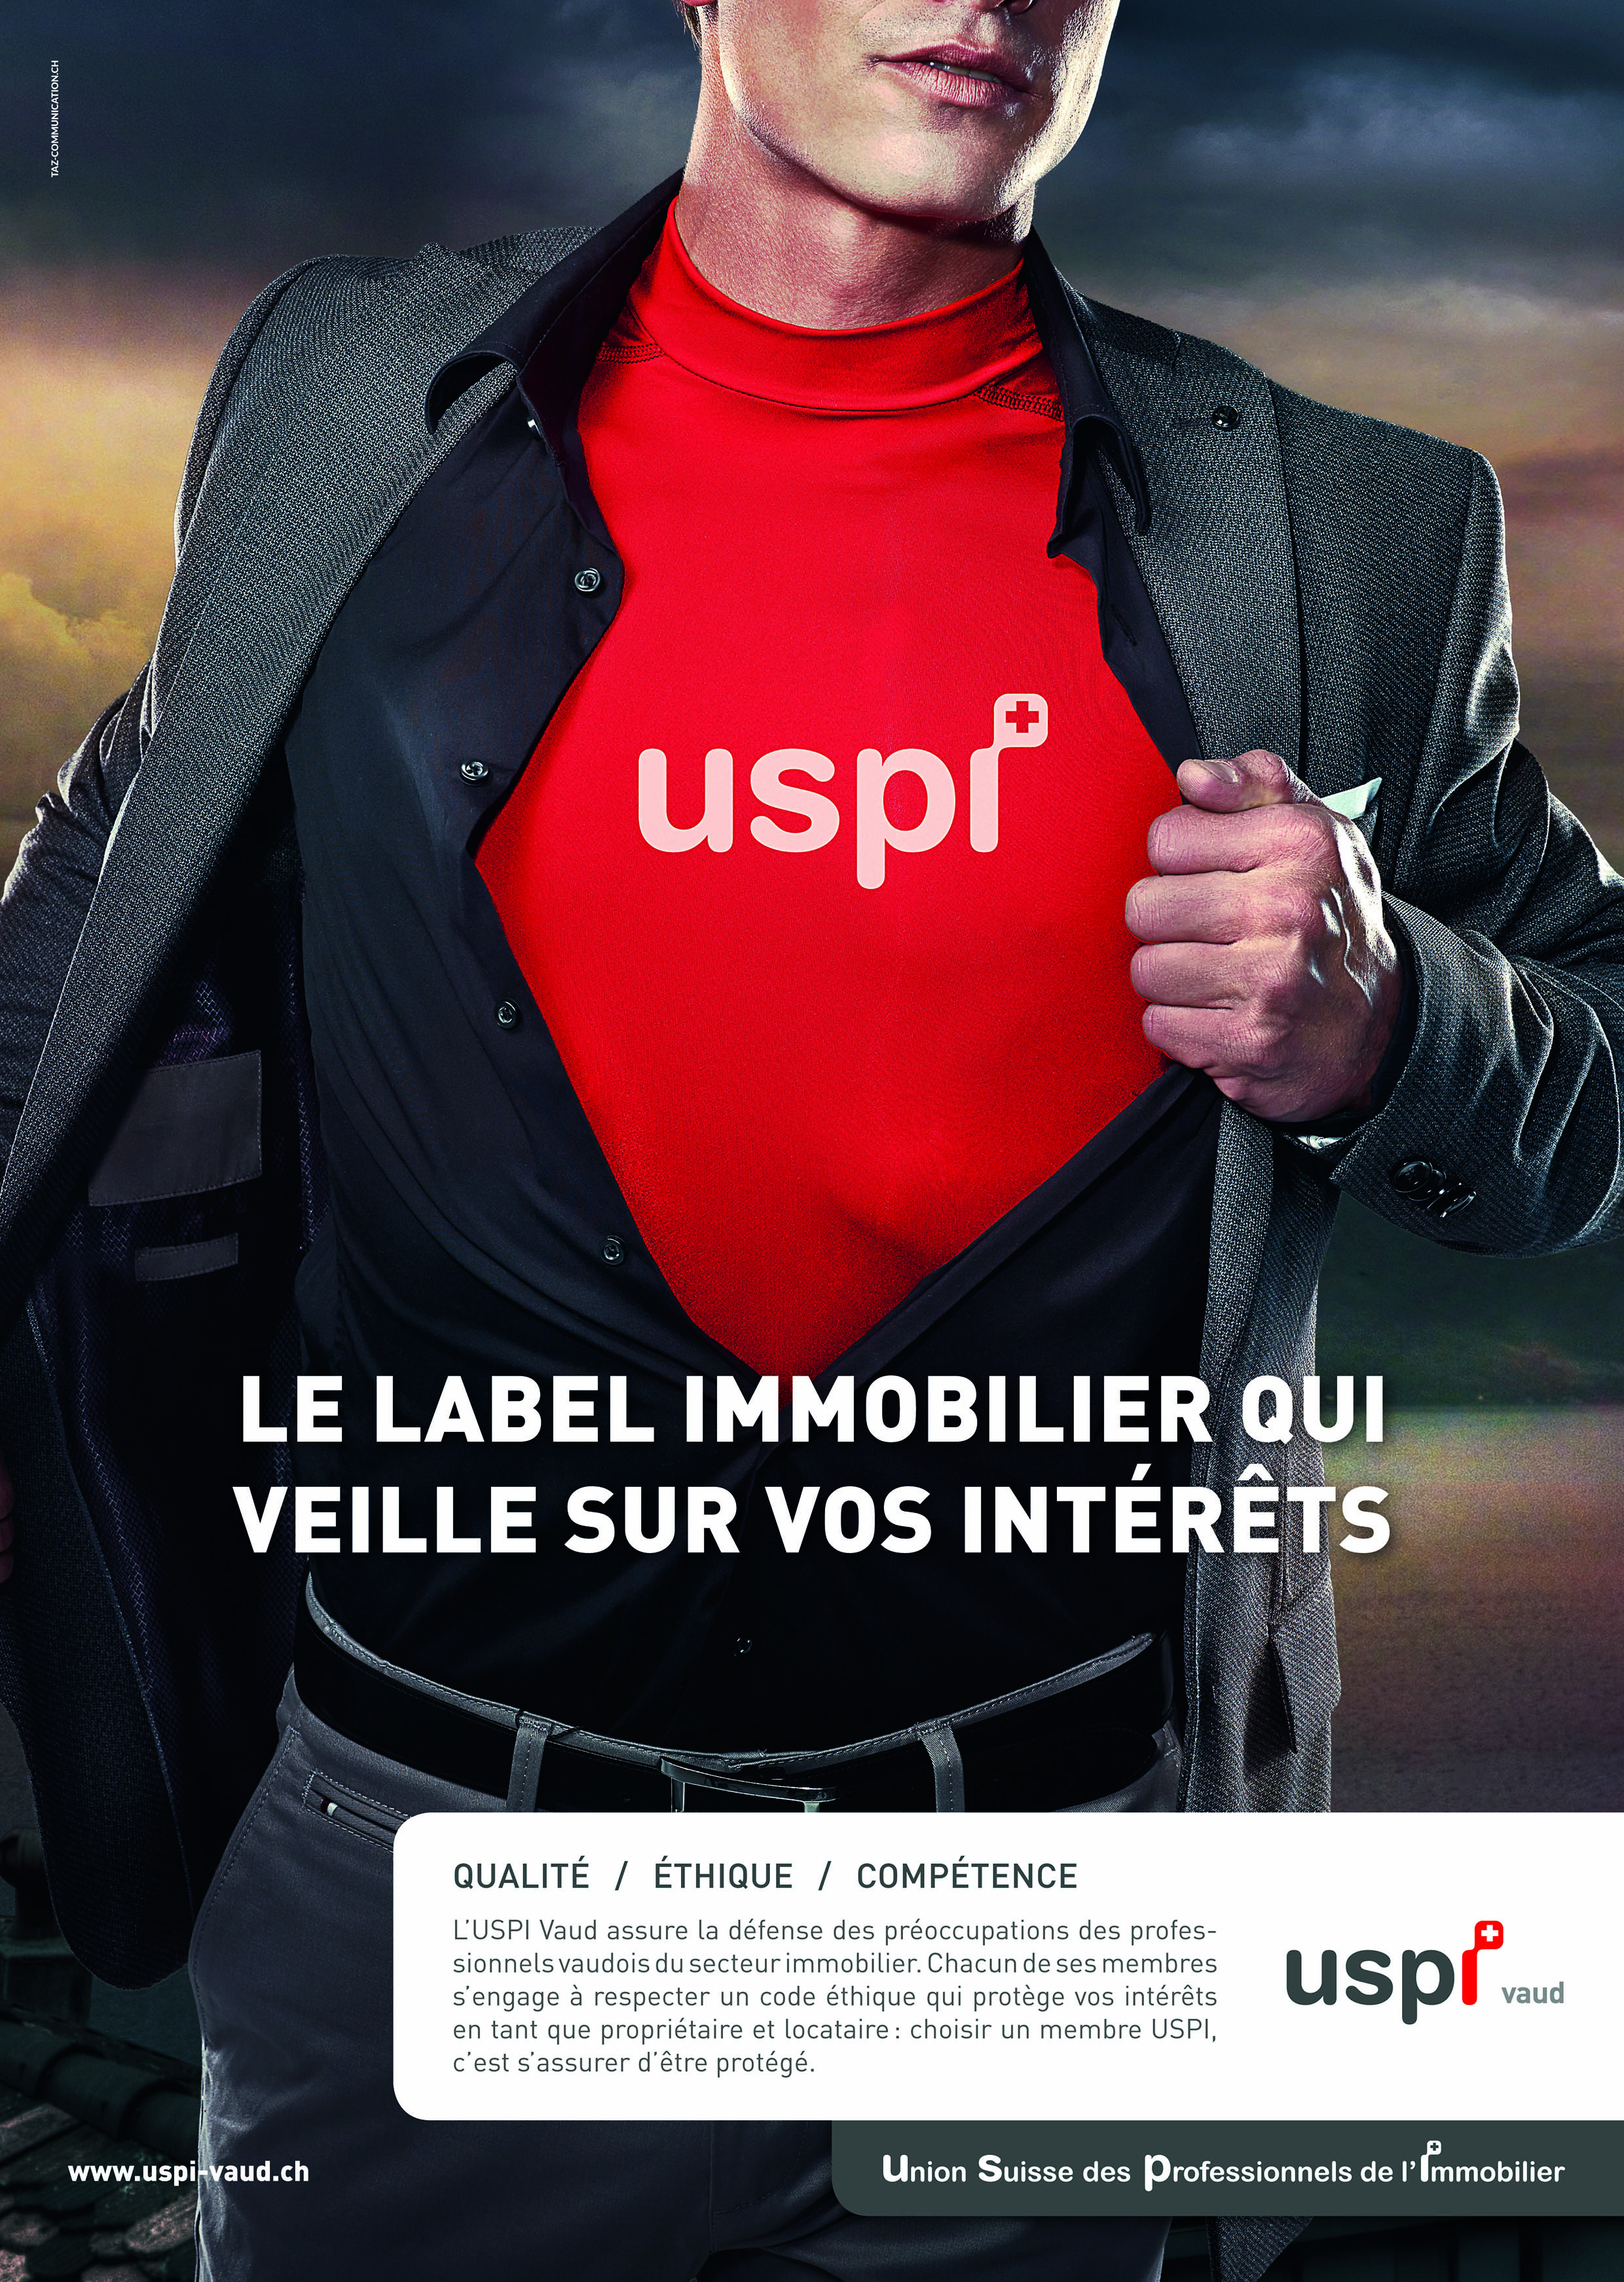 Première campagne publicitaire pour l’USPI Vaud : les supers héros veillent sur vos intérêts